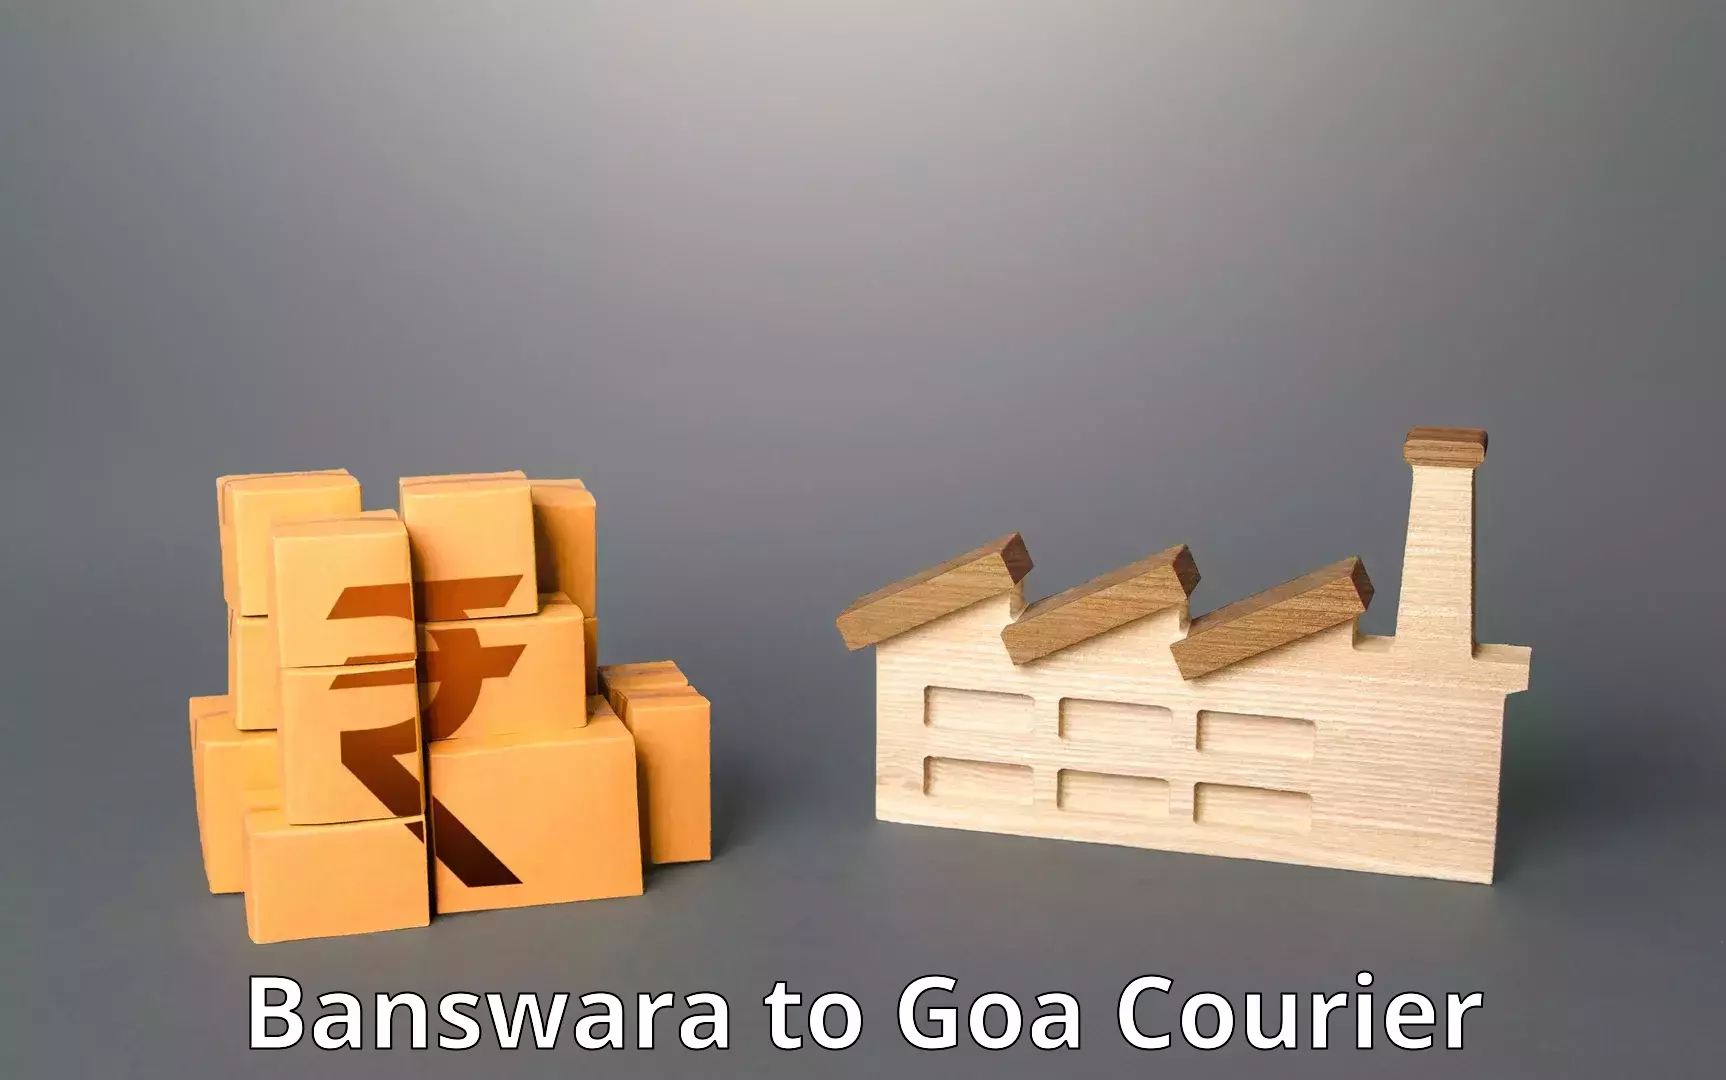 Flexible shipping options Banswara to Panjim